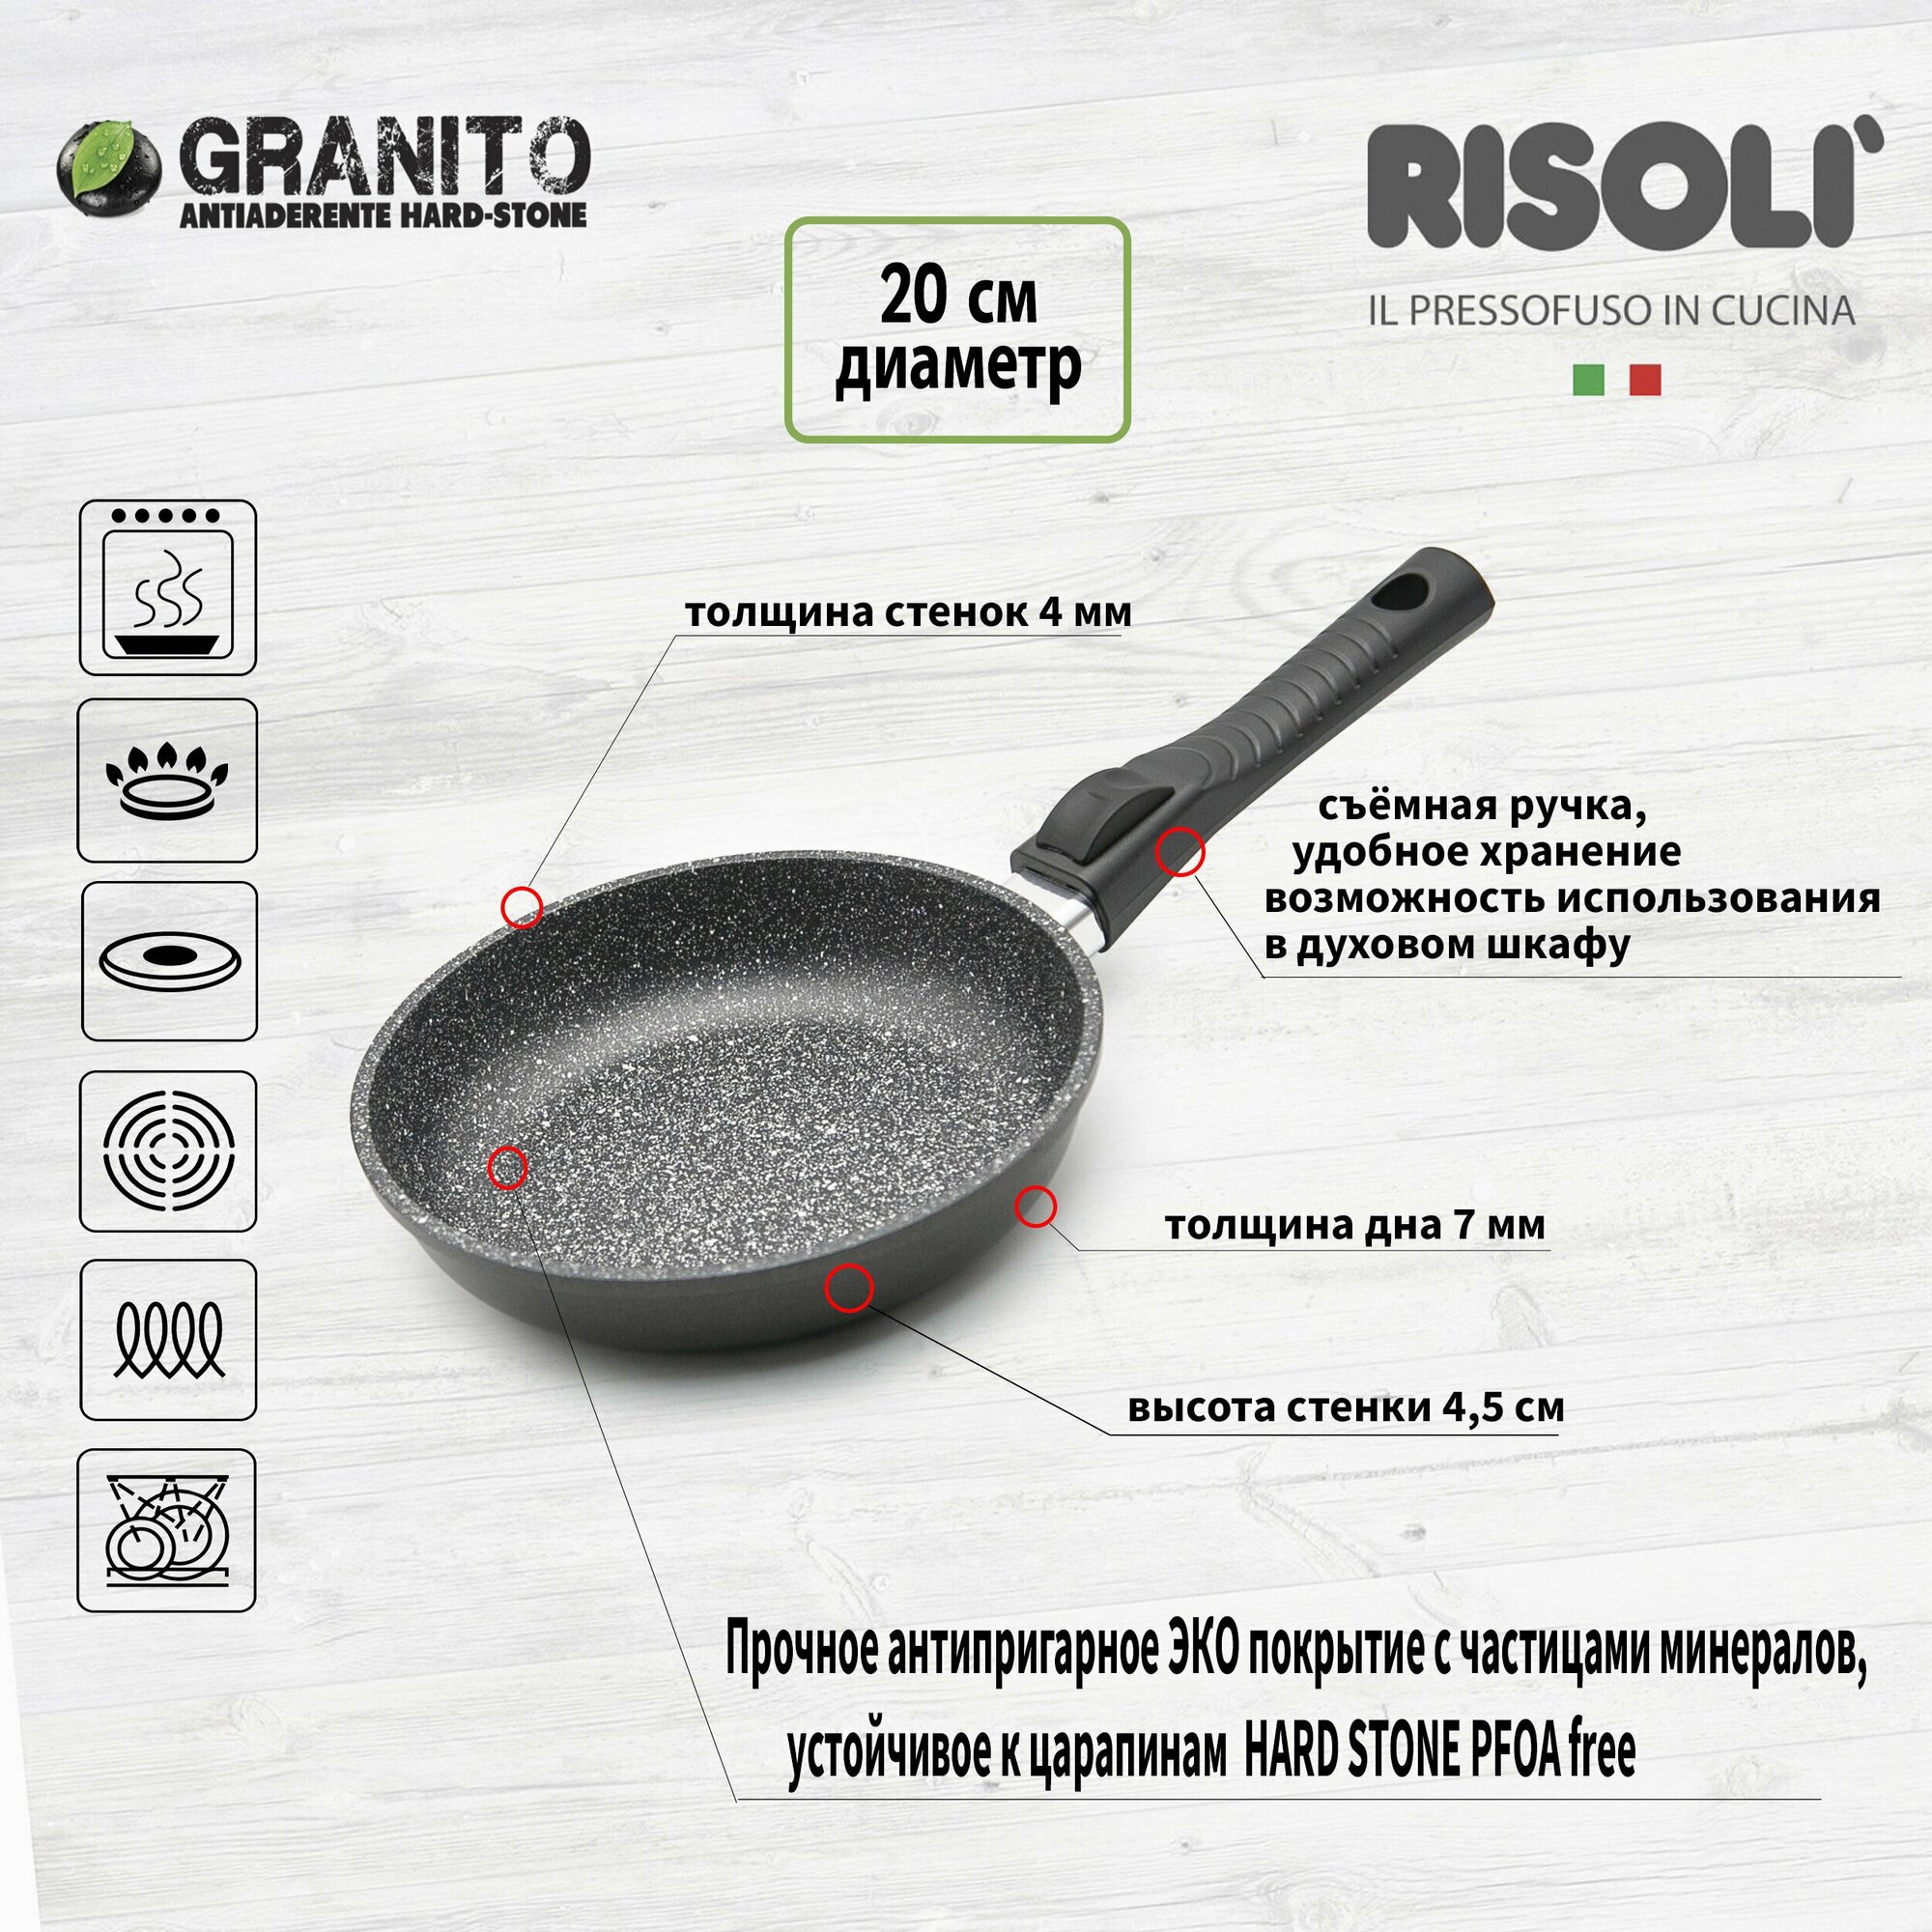 Сковорода индукционная со съемной ручкой Risoli Granito Premium Click, 20 см, антипригарное покрытие, литой алюминий, без крышки, Италия